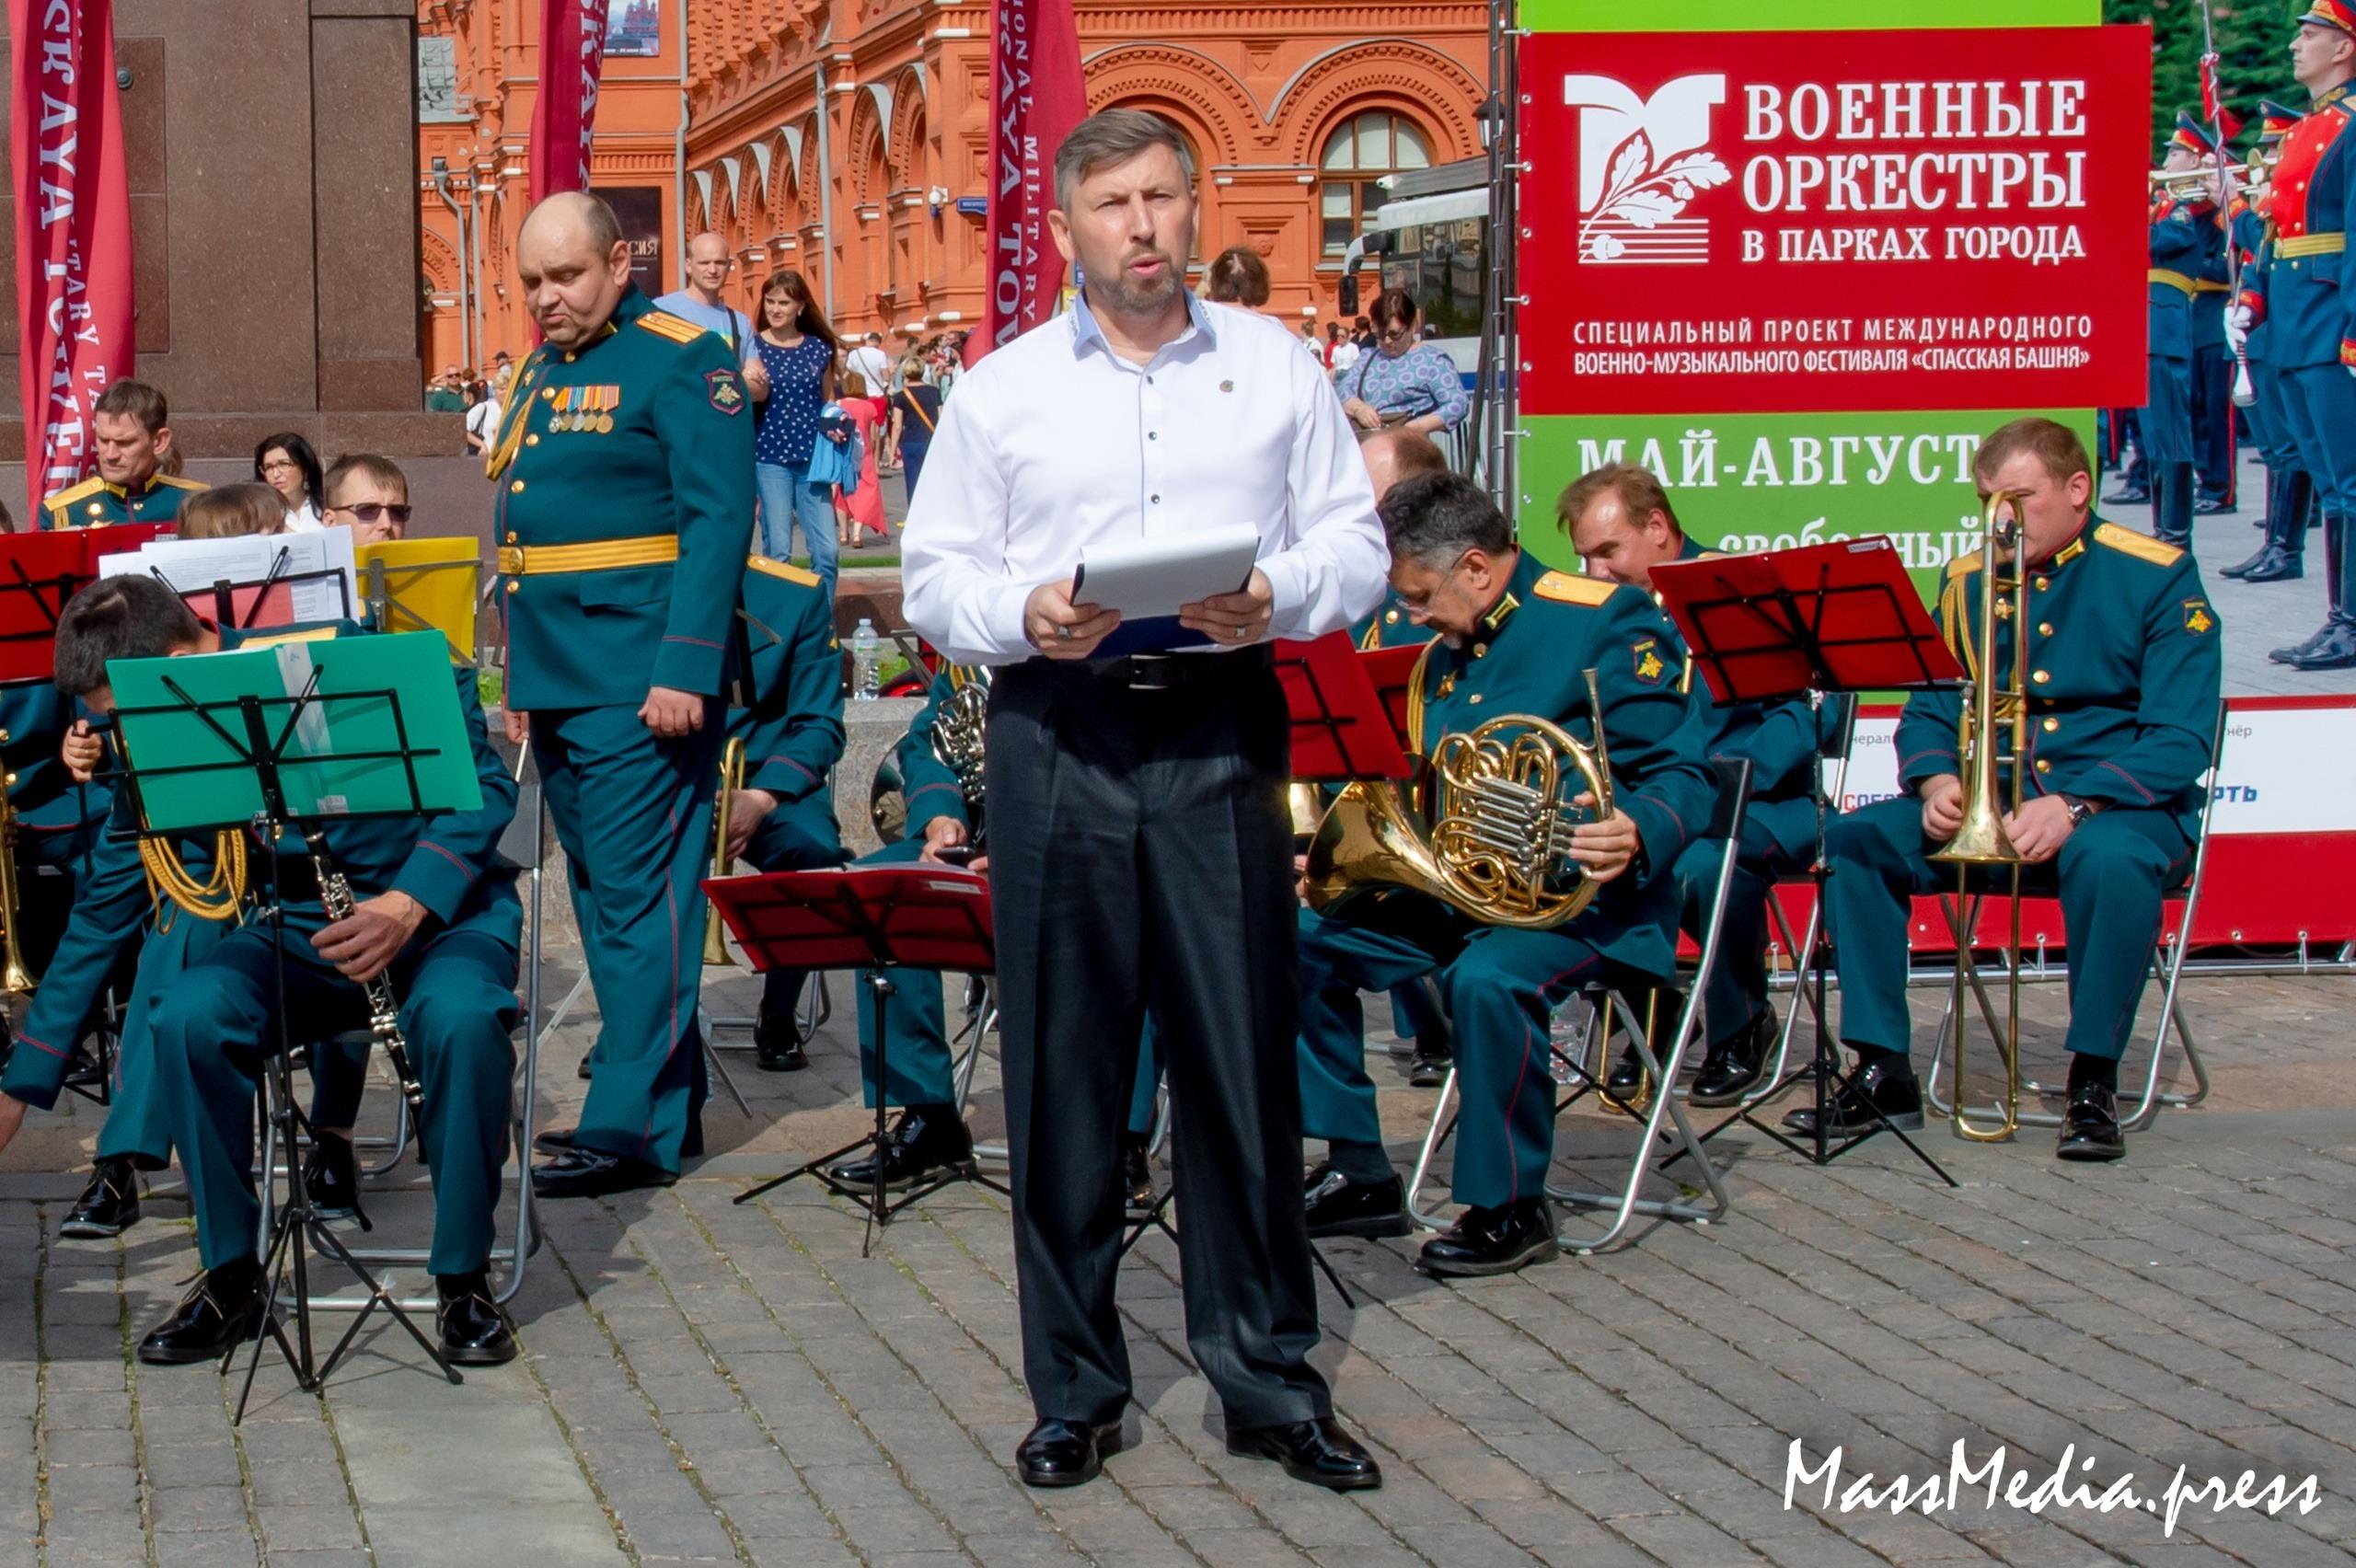 На Манежной площади в исполнении военного оркестра прозвучало попурри на темы песен Фрэнка Синатры